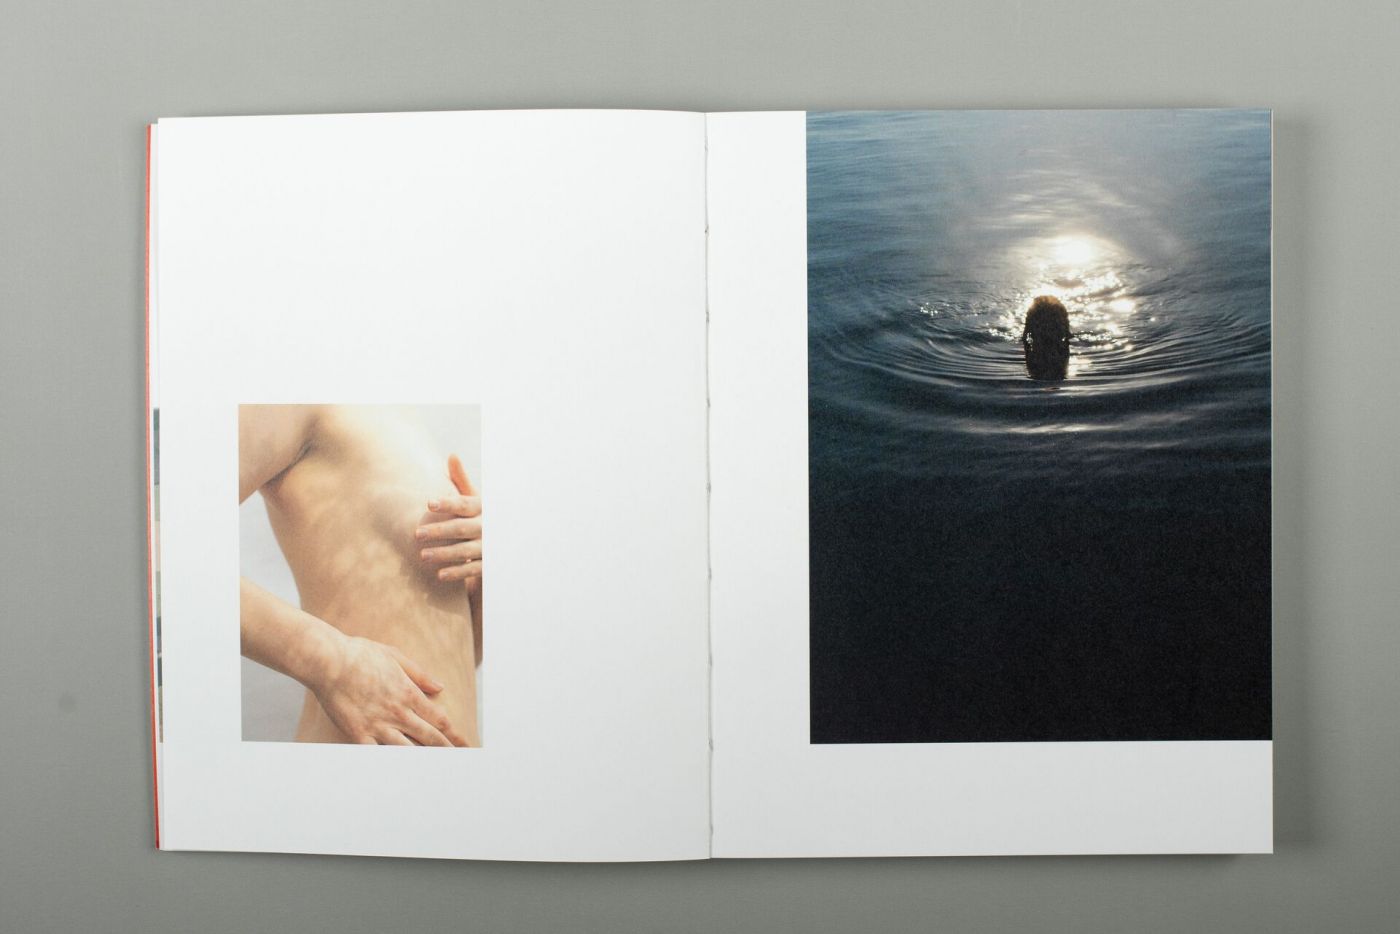 Doppeltseite aus einem Fotobuch, die eine Frau beim Schwimmen zeigt. (Foto: FH Münster/Nina Vollmer)